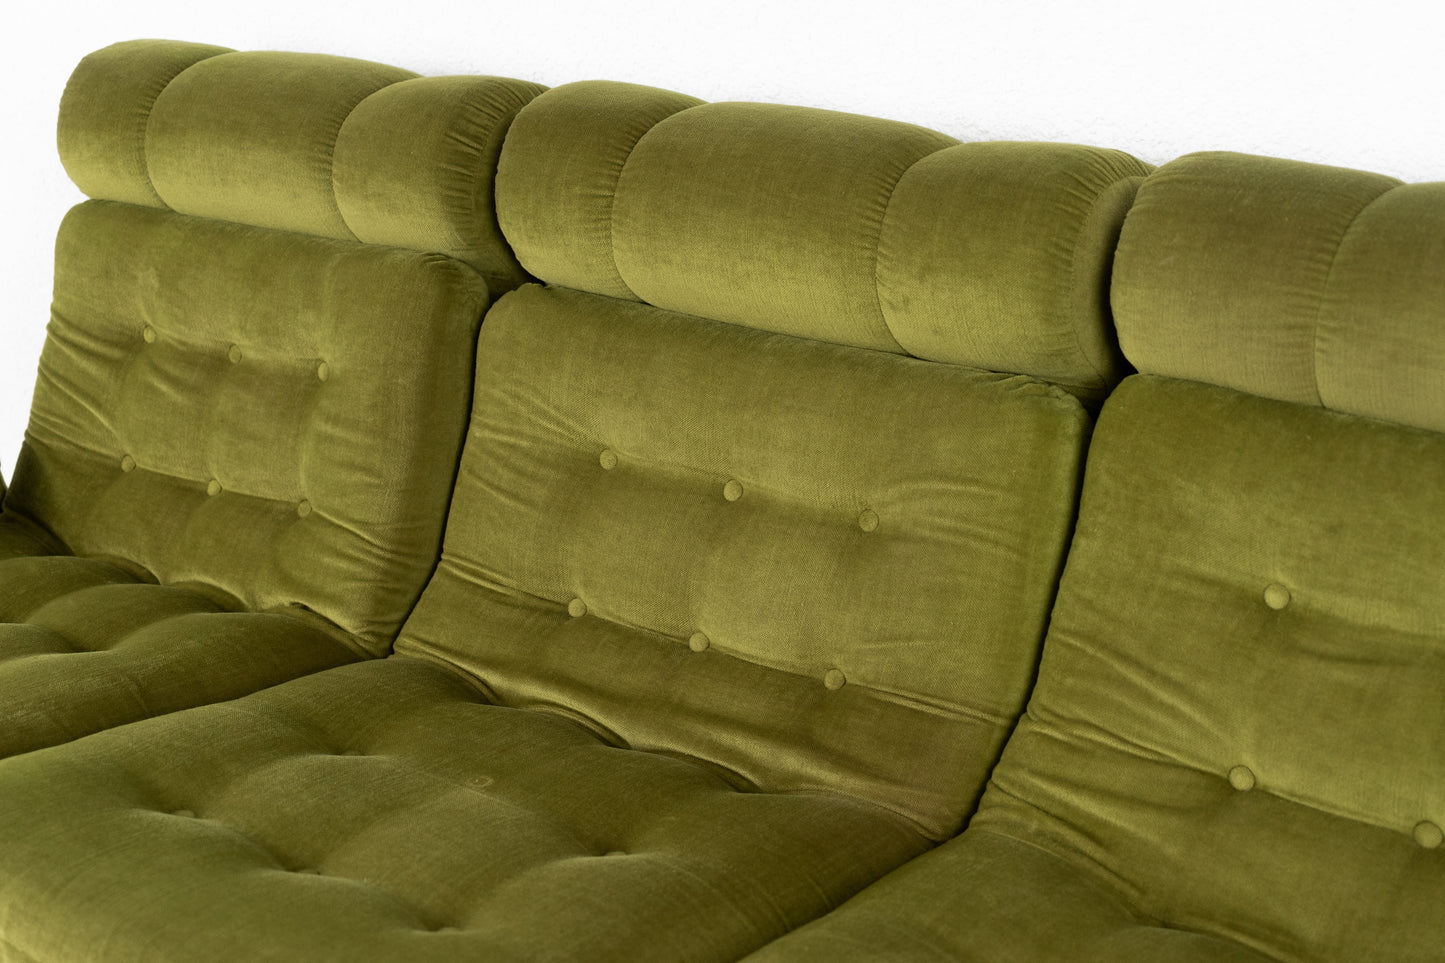 Vintage Sofas 1960er Grün Samt Dreisitzer Retro Mid Century Sessel Couch 60s Modular